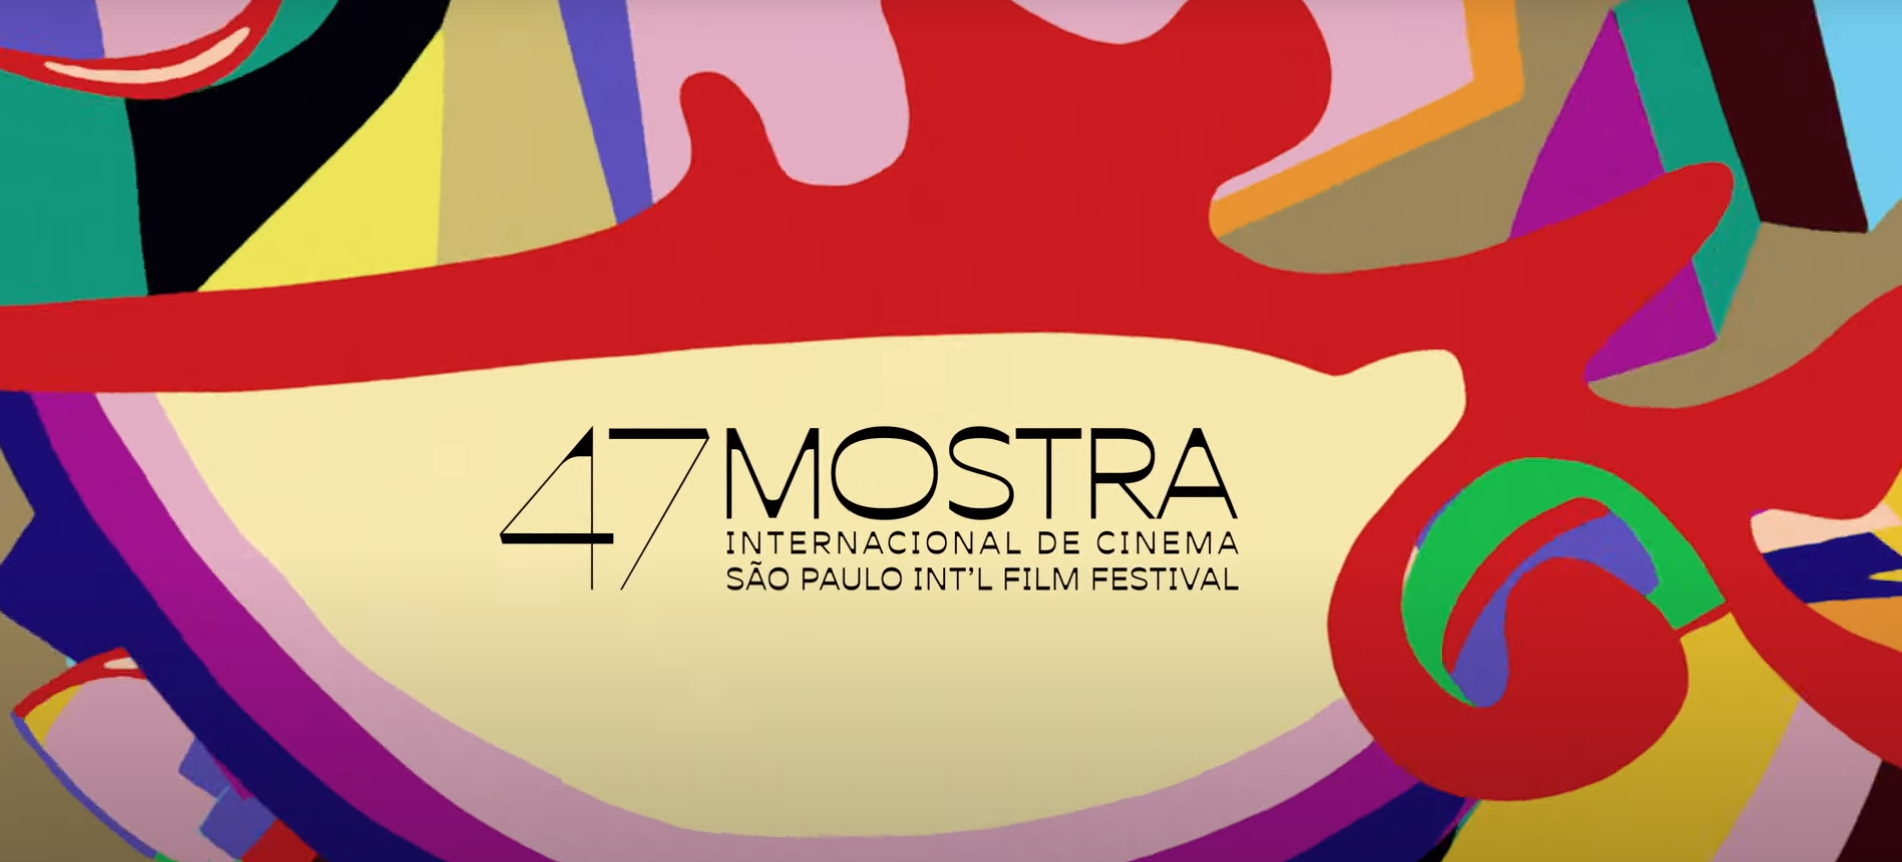 Vinheta de divulgação da Mostra Internacional de Cinema de São Paulo, que conta em 2023 com o Prêmio Netflix